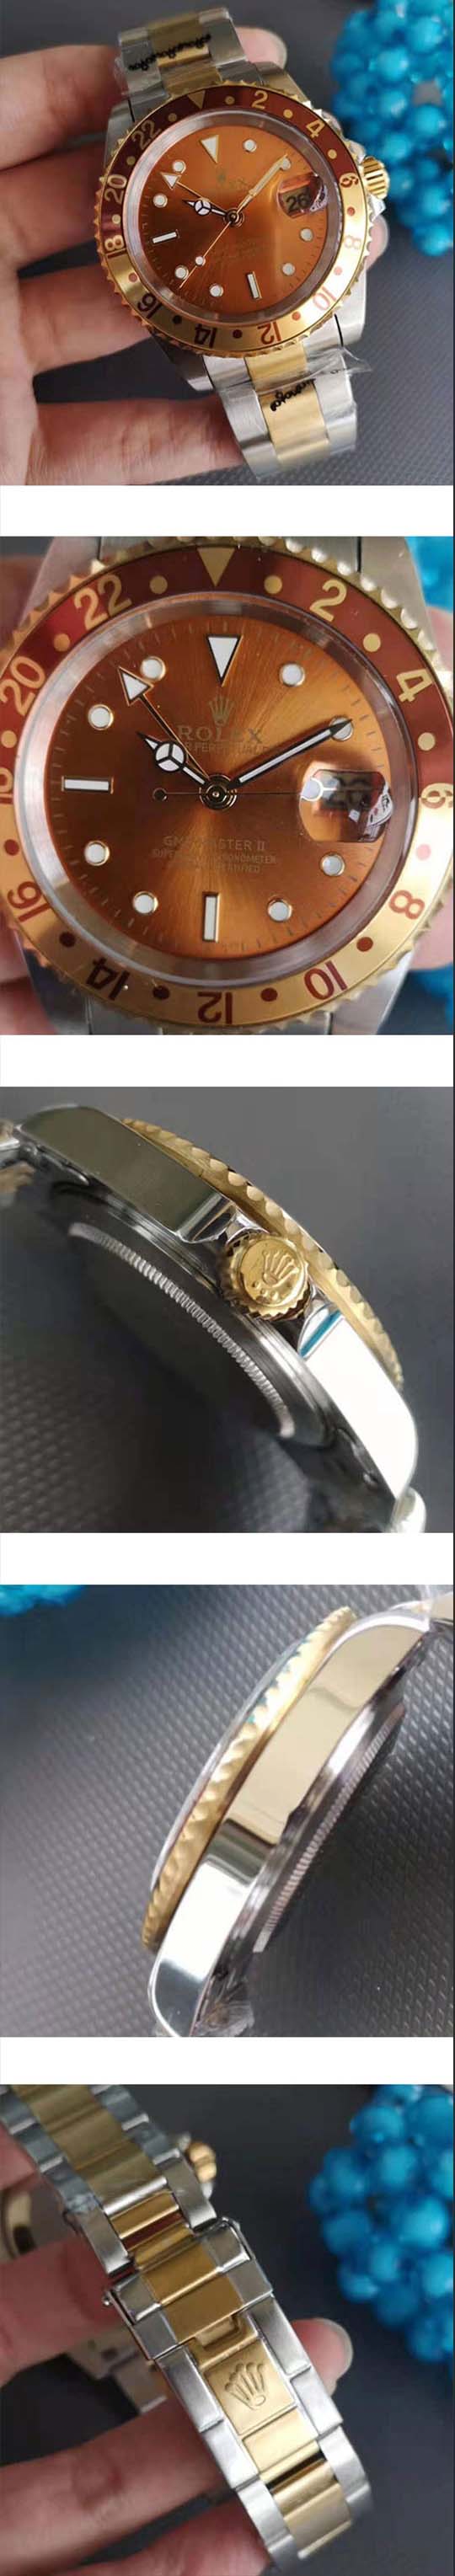 メンズ腕時計 ROLEXコピー GMTマスター2 ルートビア 16713 茶金ベゼル 2813改良ムーブ ブラウン カレンダー